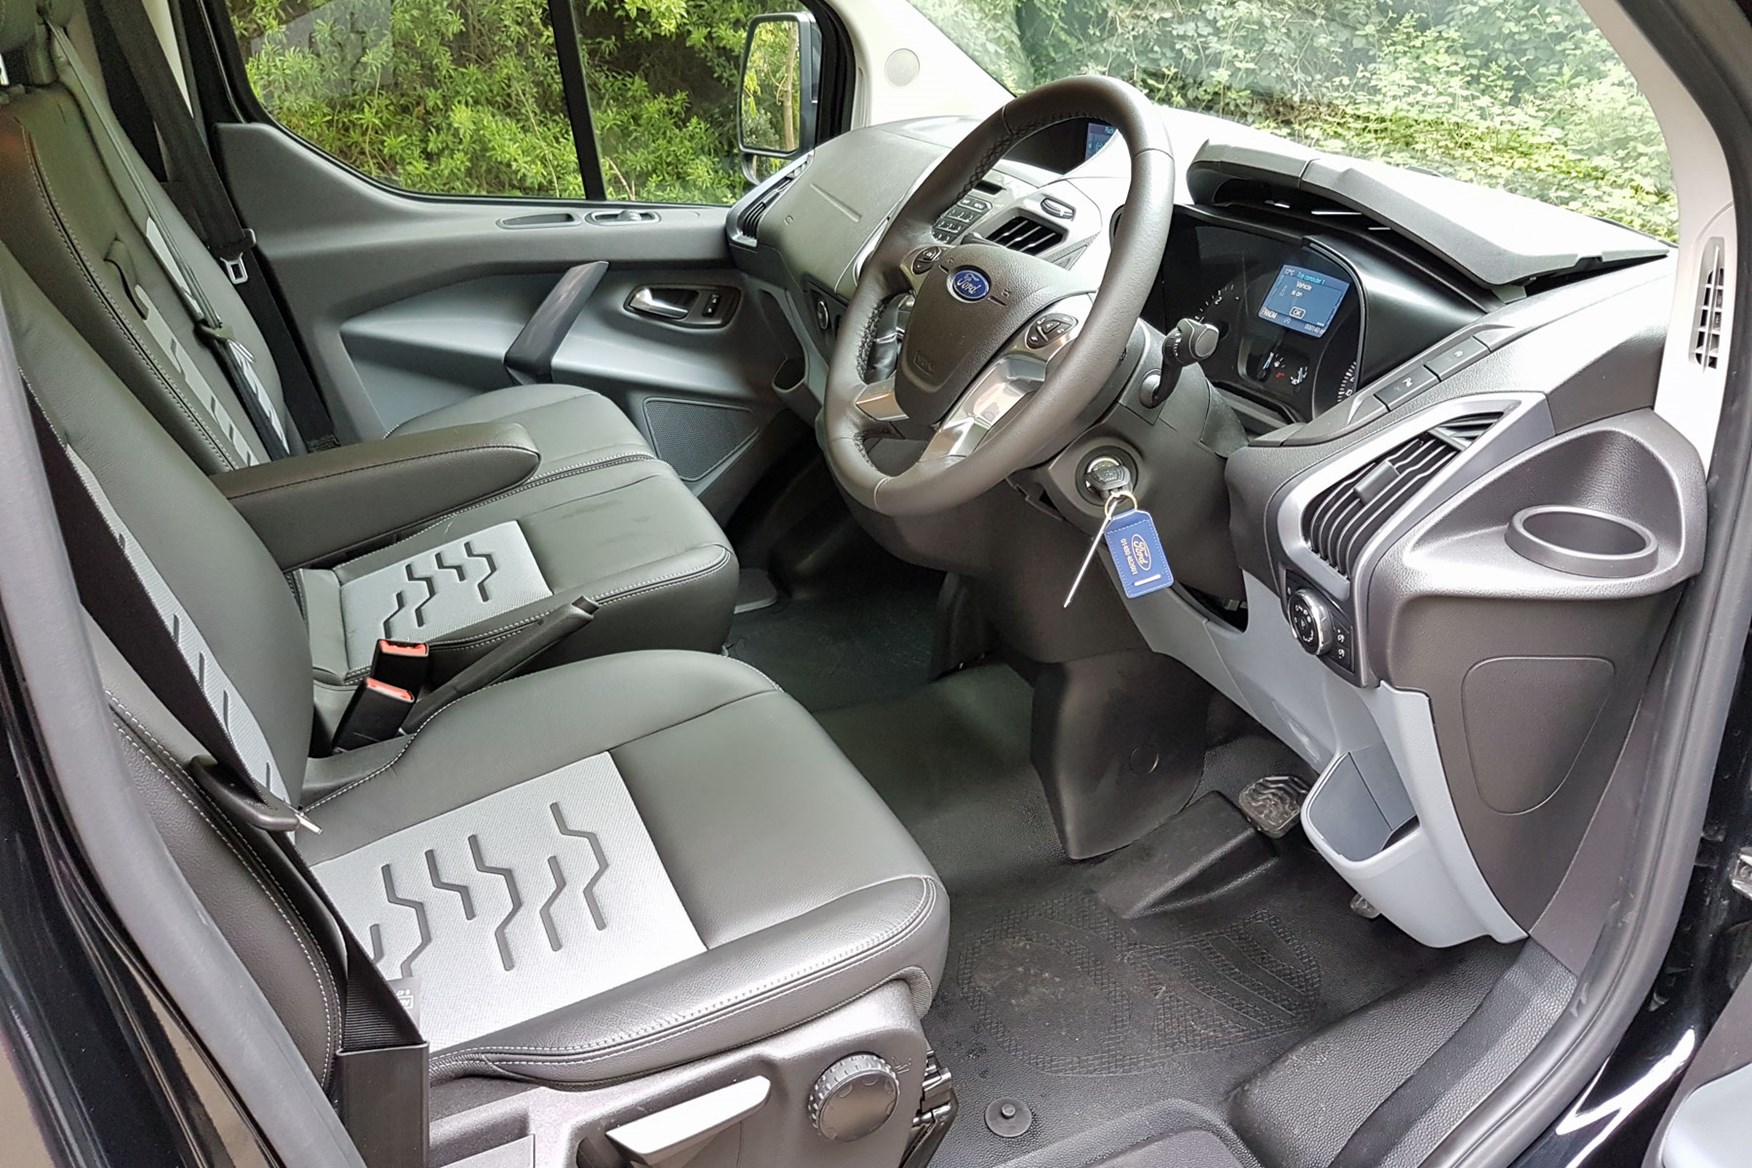 ford transit custom limited interior